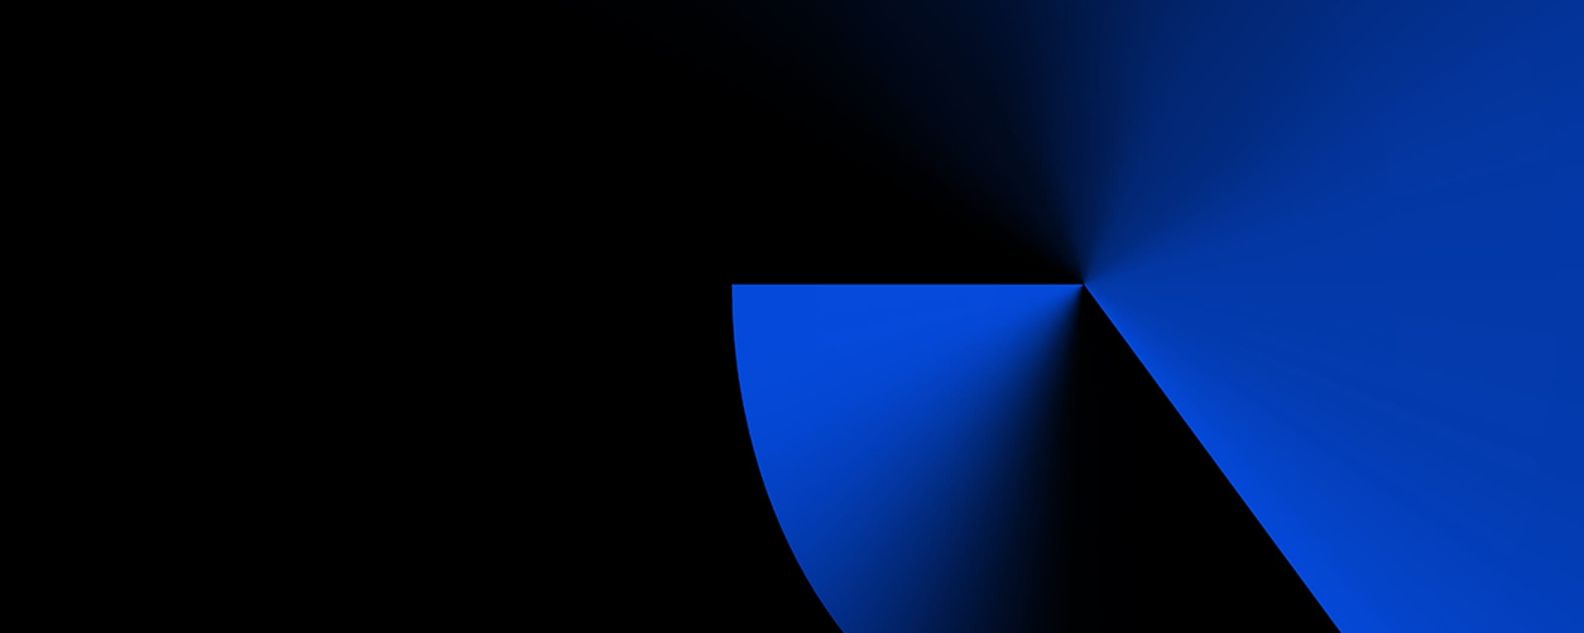 Bentuk biru geometris dengan latar belakang hitam